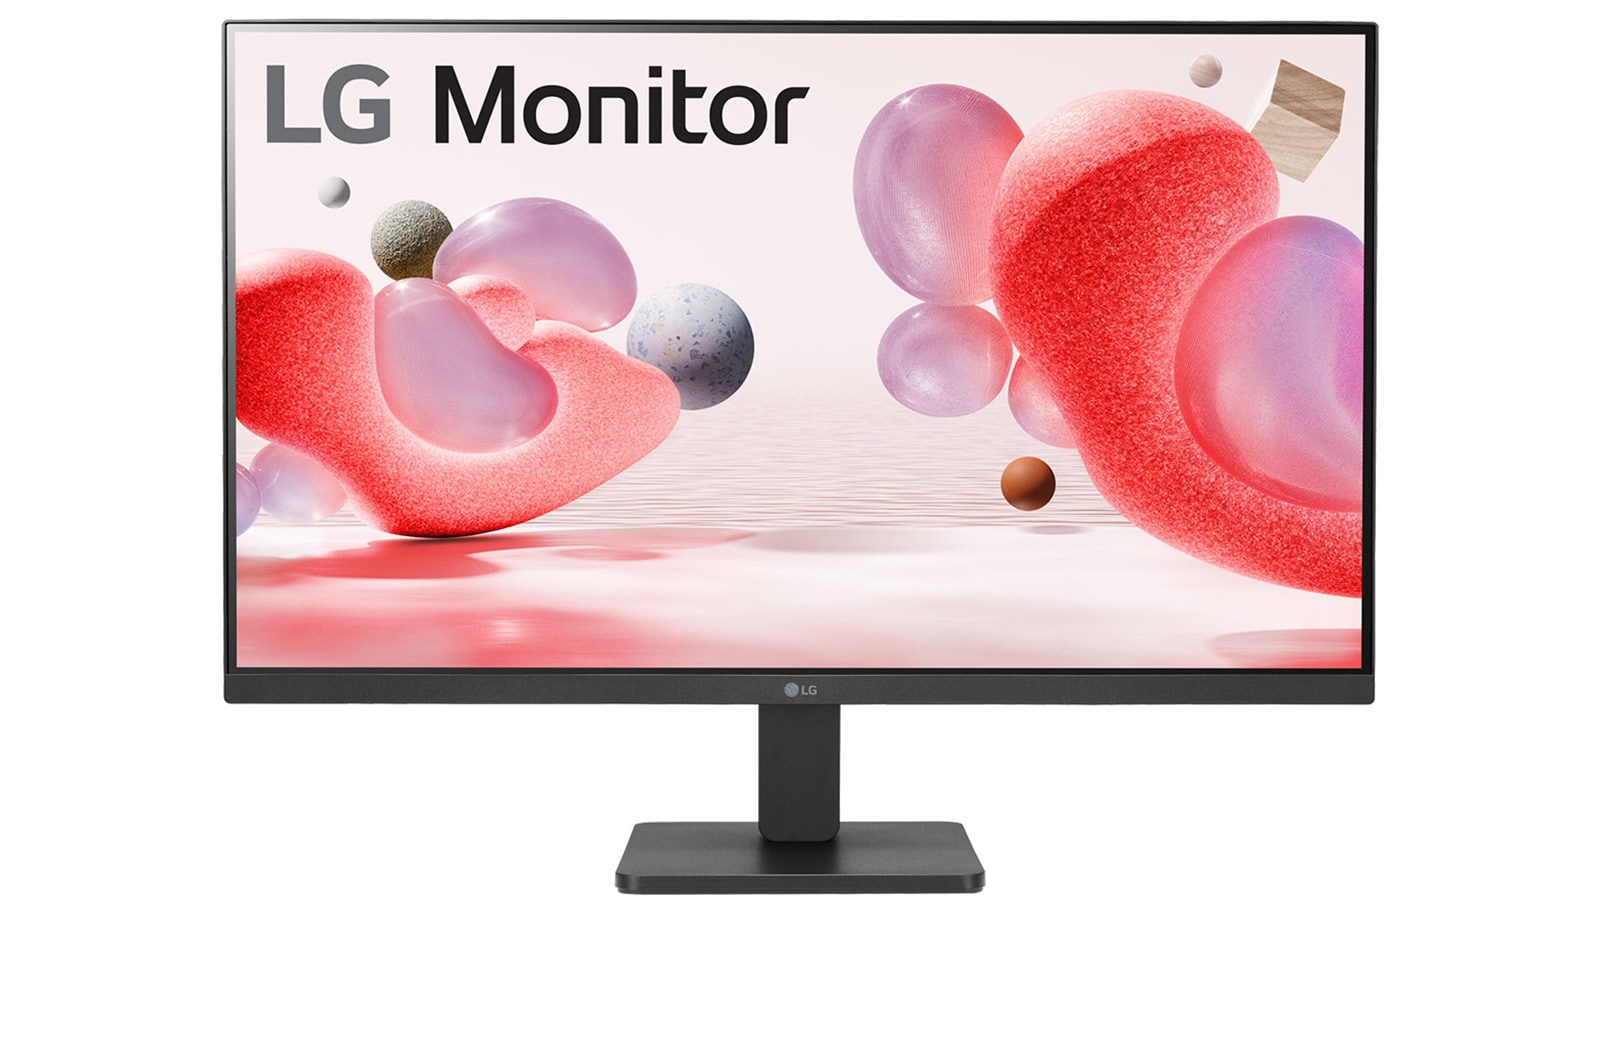 LG Monitor TVs